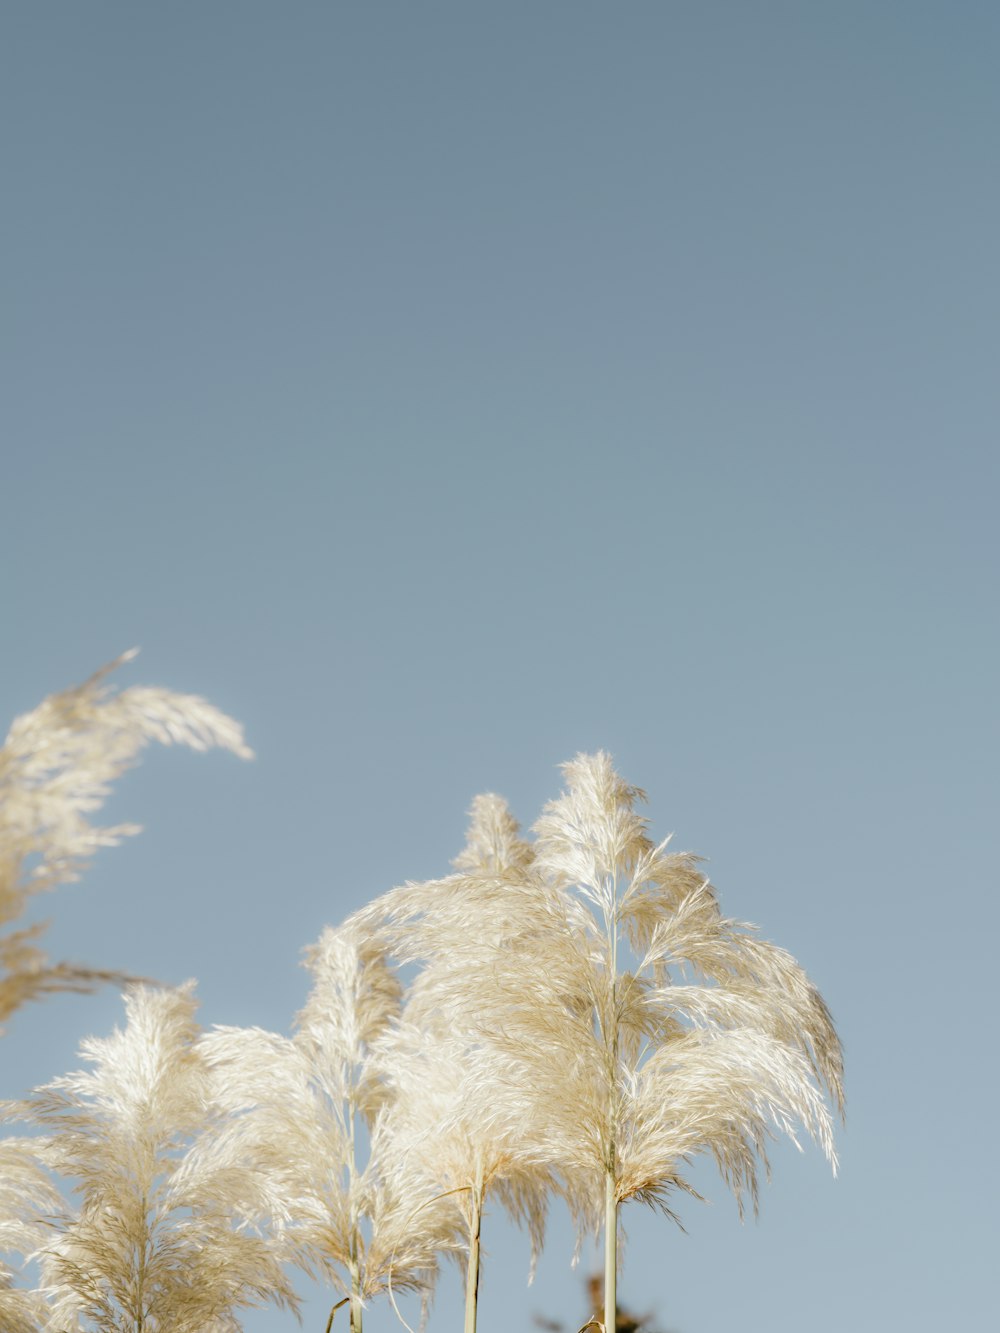 plante blanche et brune sous ciel bleu pendant la journée